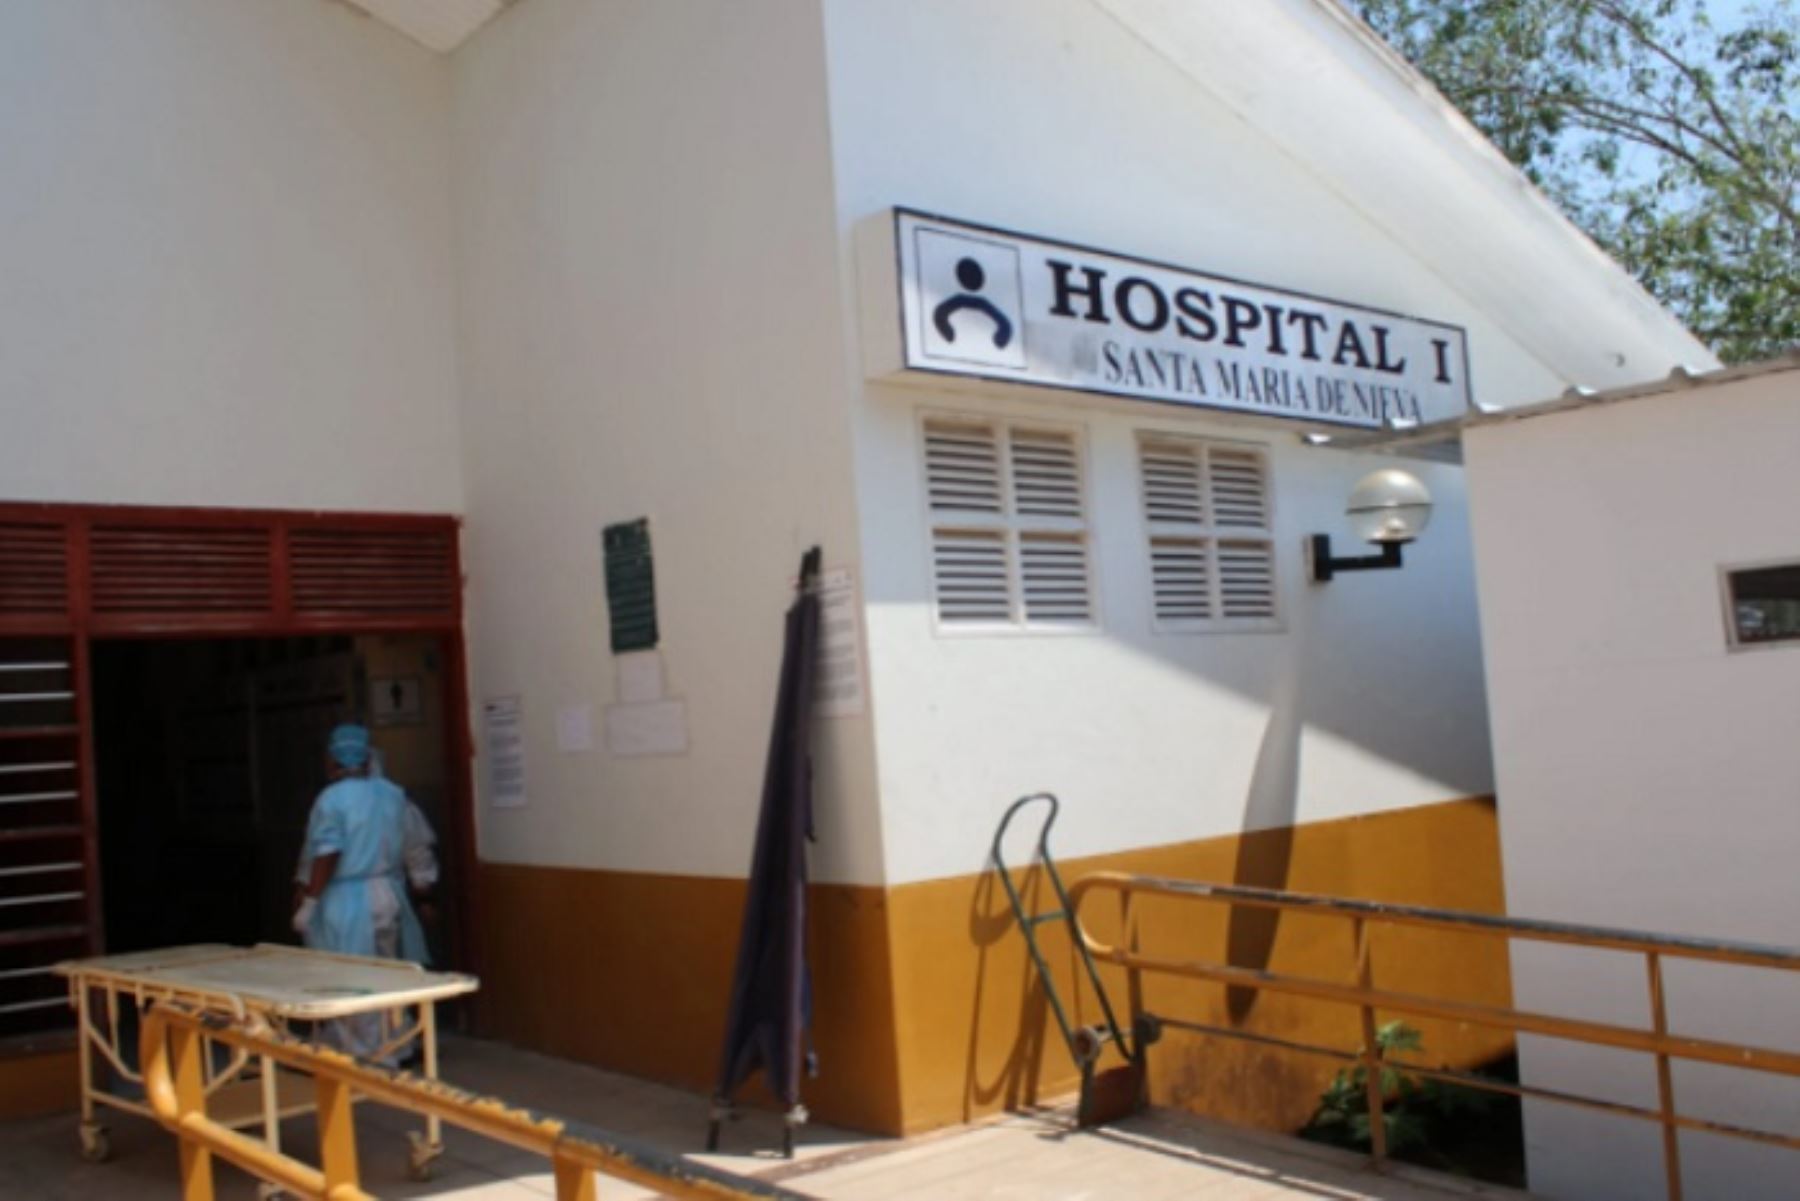 Minsa fortalecerá operatividad del Hospital Santa María de Nieva en Condorcanqui